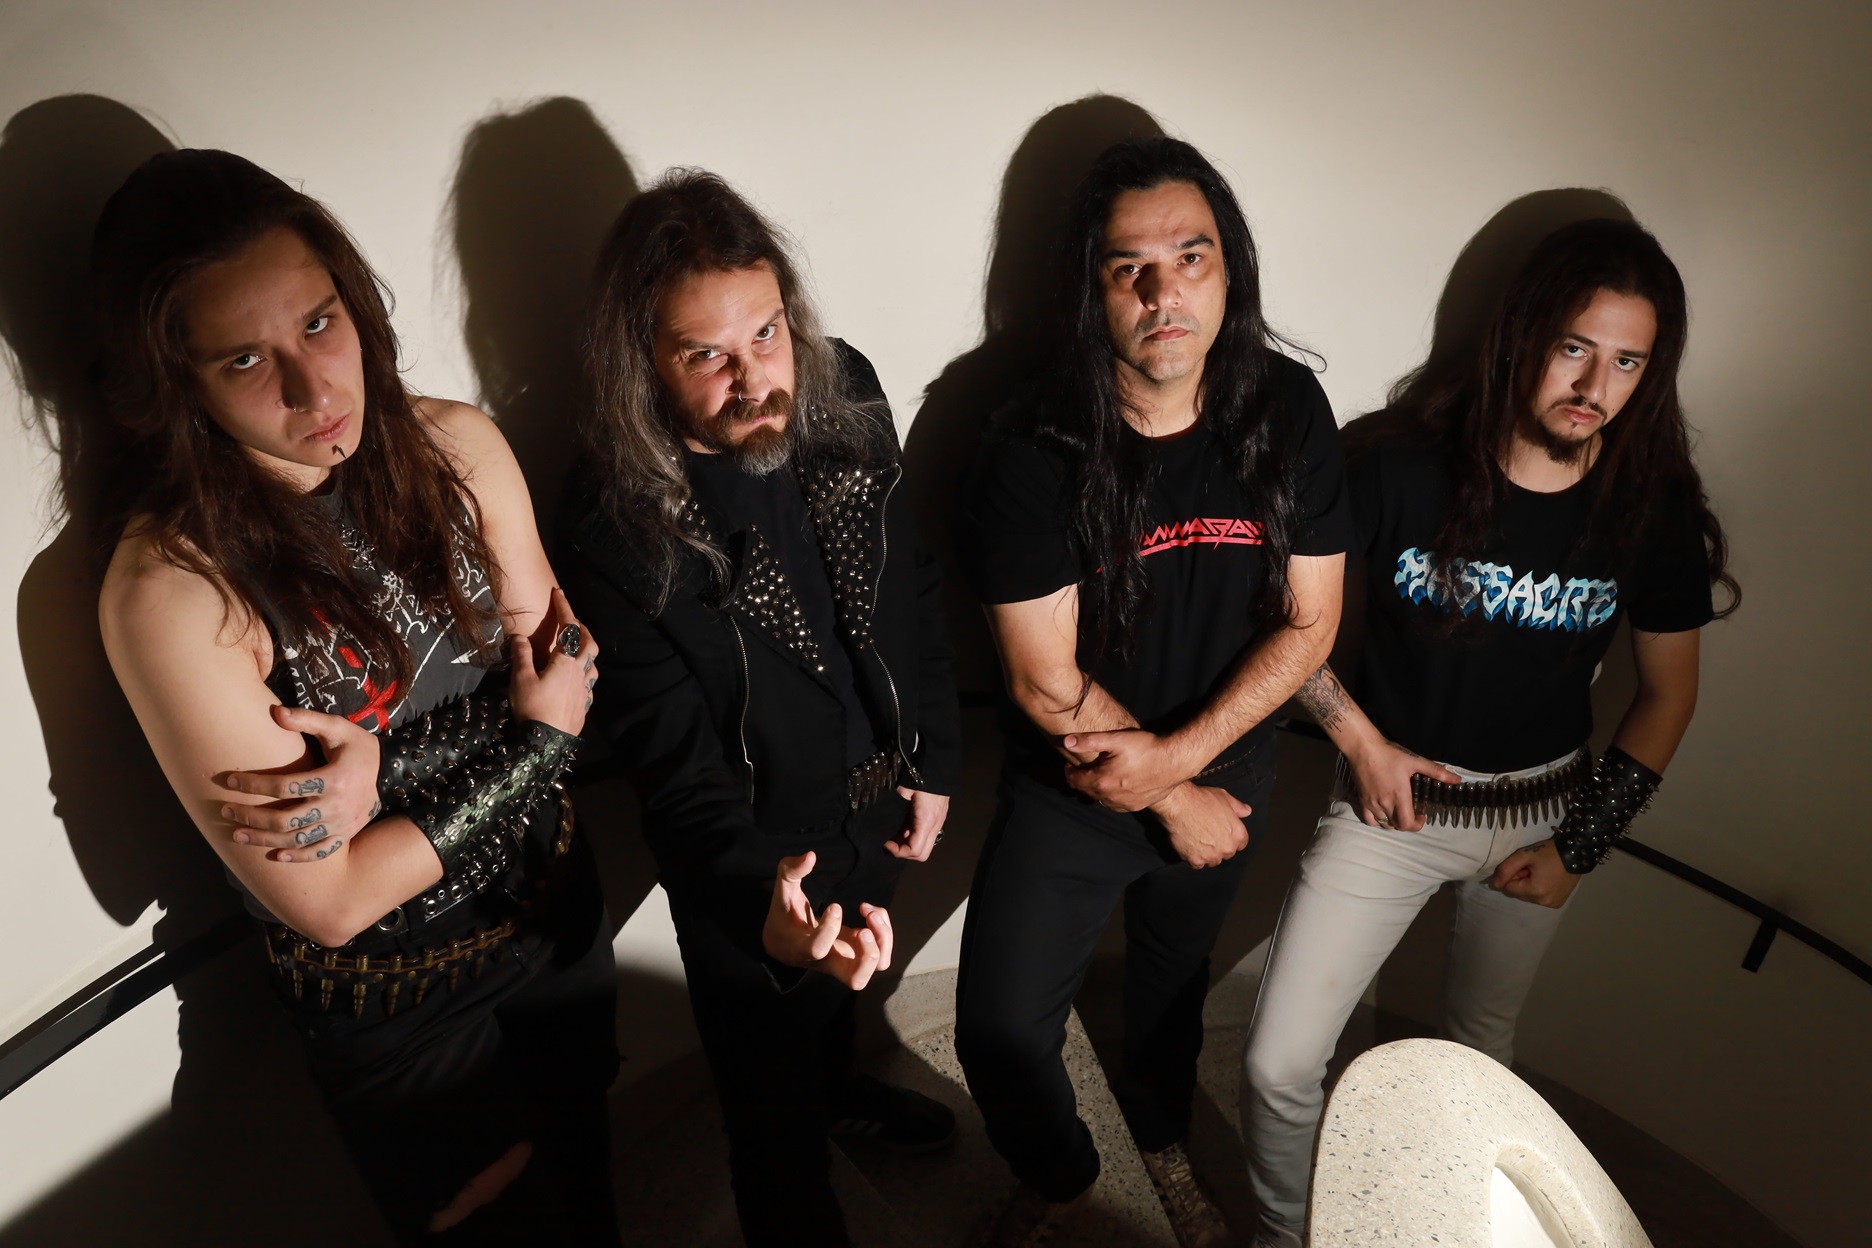 Quarteto do ABC Paulista lança single de “Broken Witchcraft” (Bywar) e revela título de seu novo álbum. 